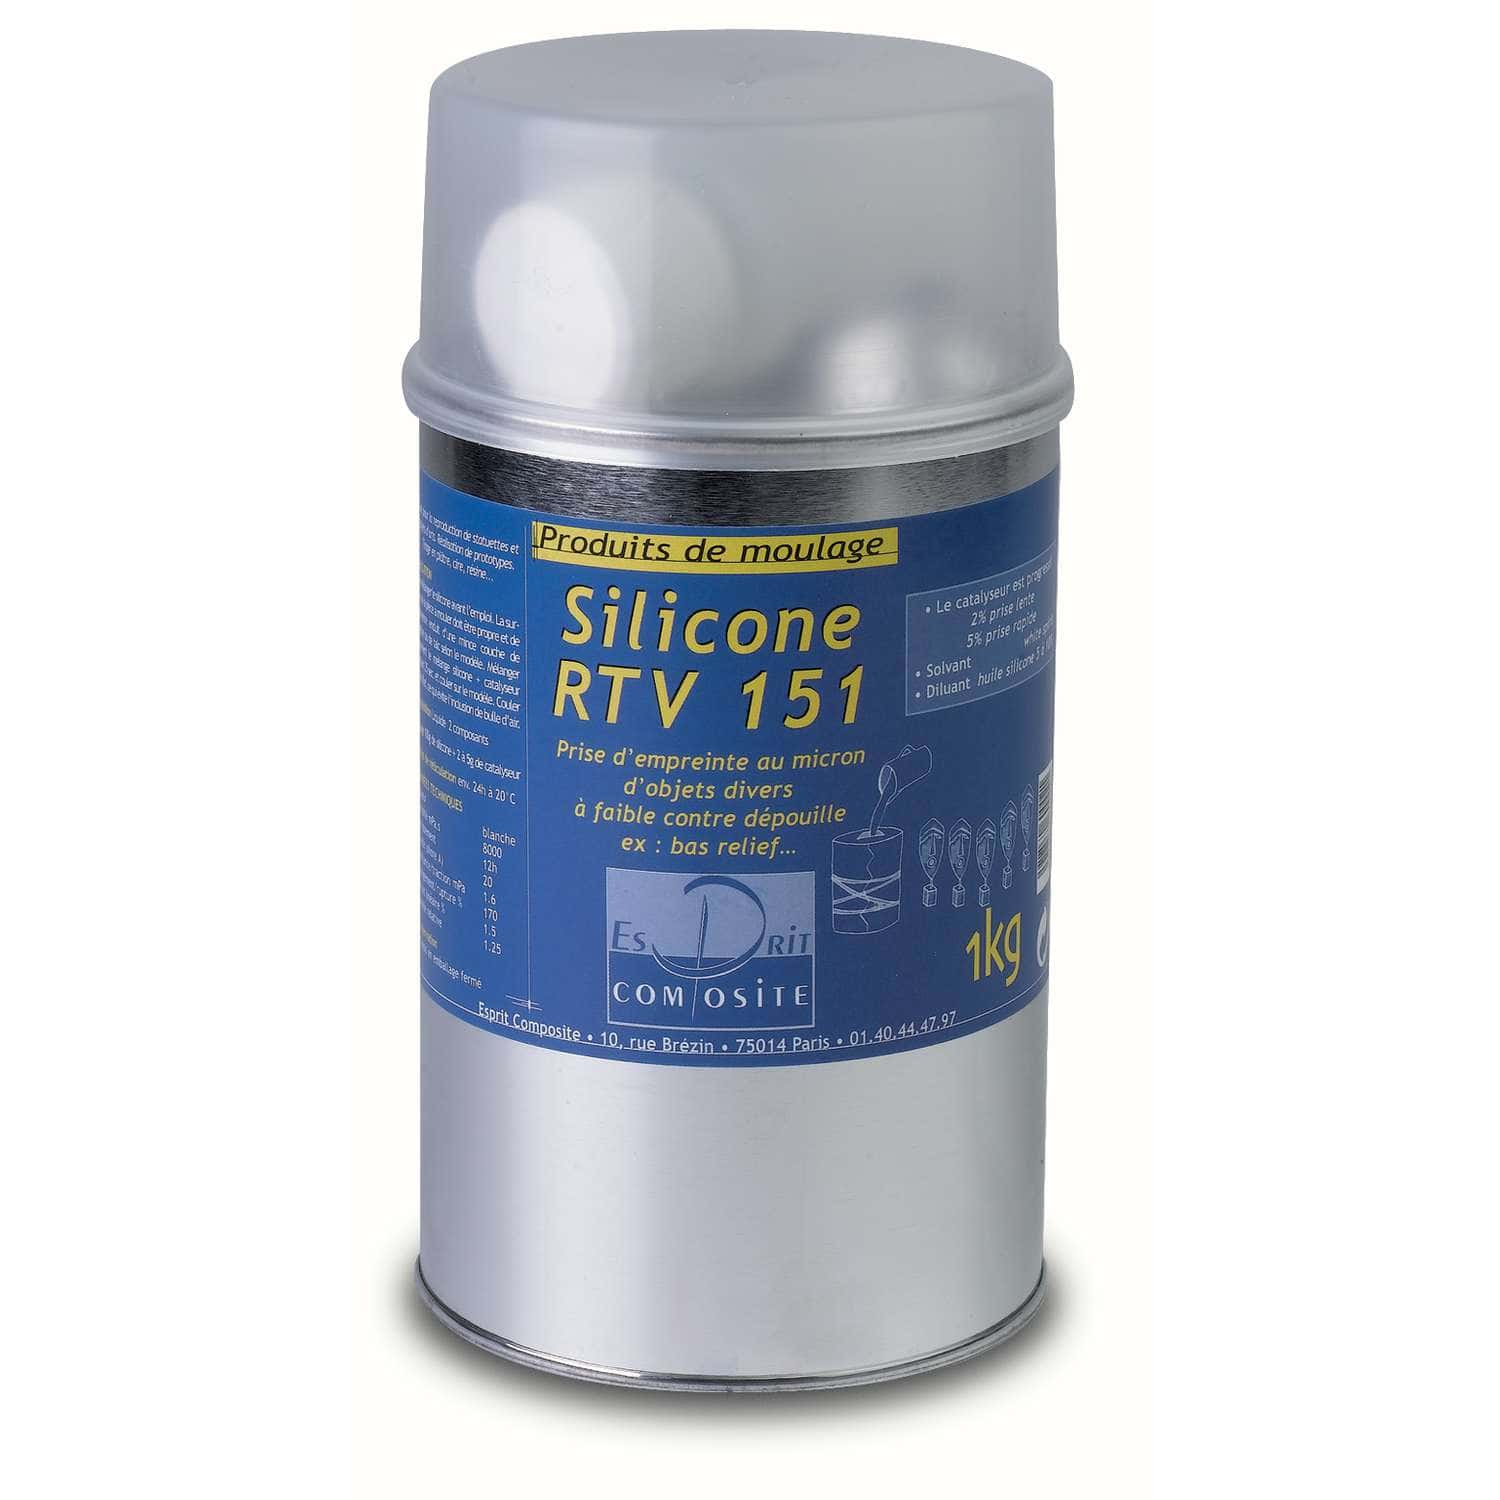 Silicone RTV 151 pour moulage ESPRIT COMPOSITE